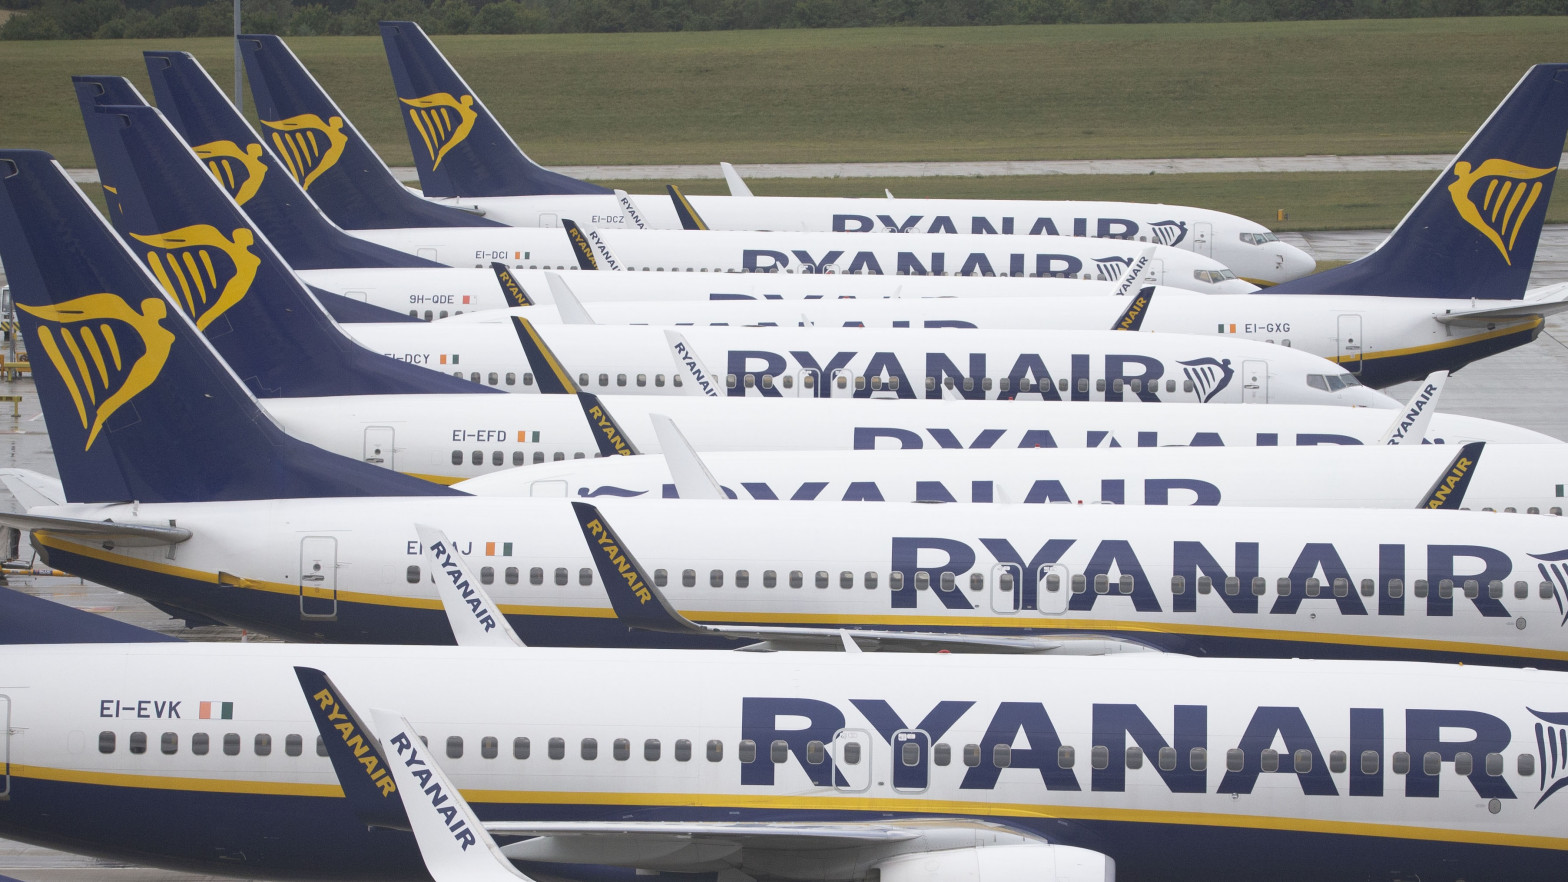 Huelga en Ryanair: cancelados 3 vuelos y 25 martes